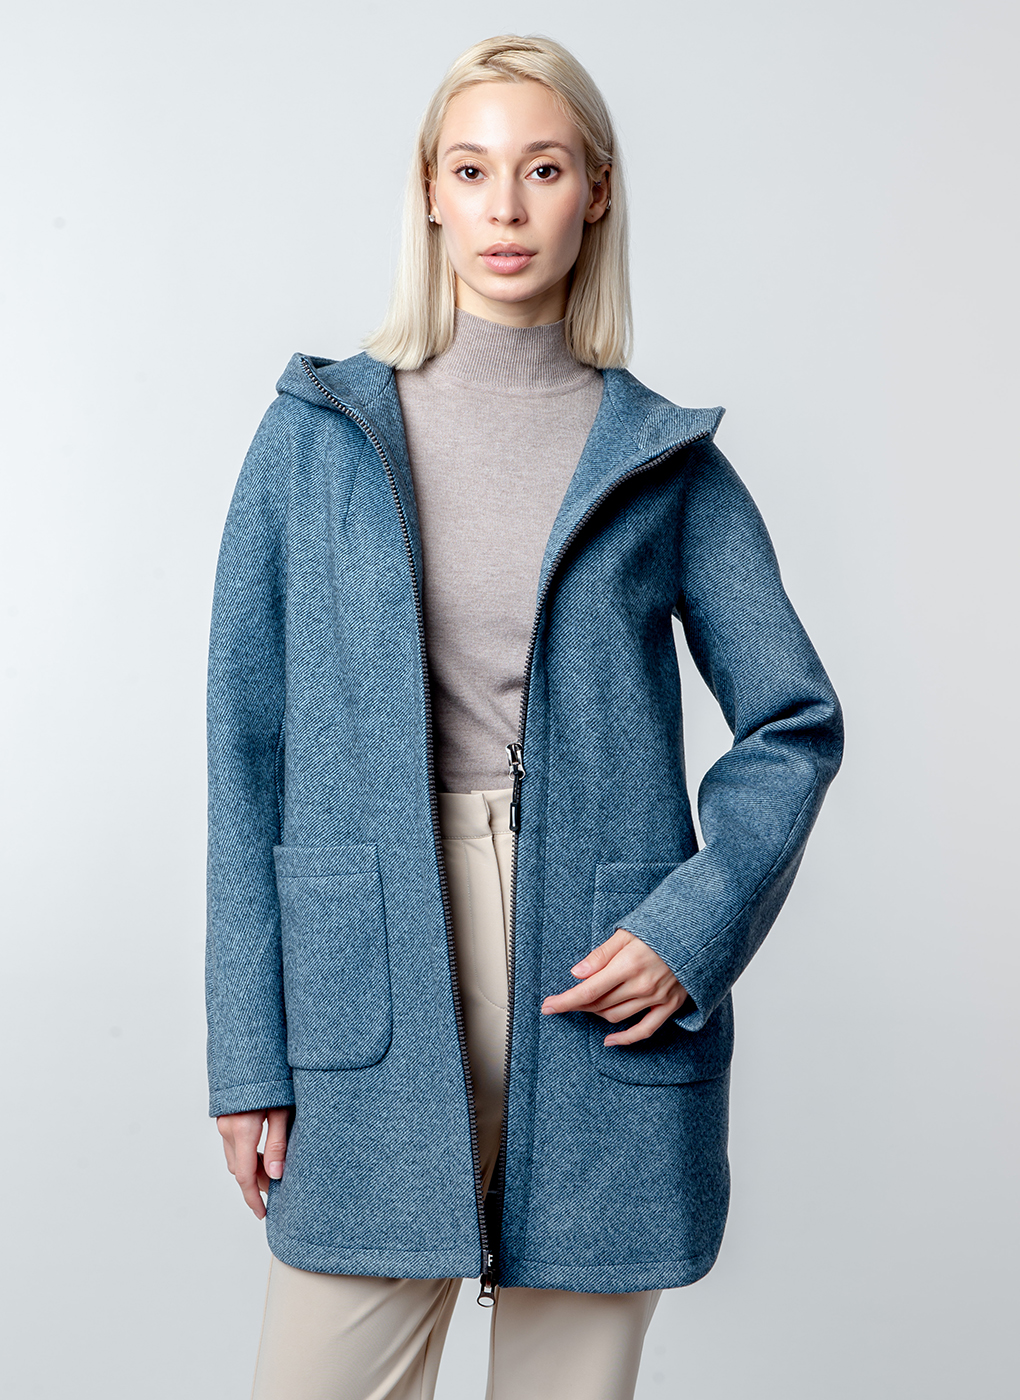 Пальто женское Каляев 52662 синее 46 RU